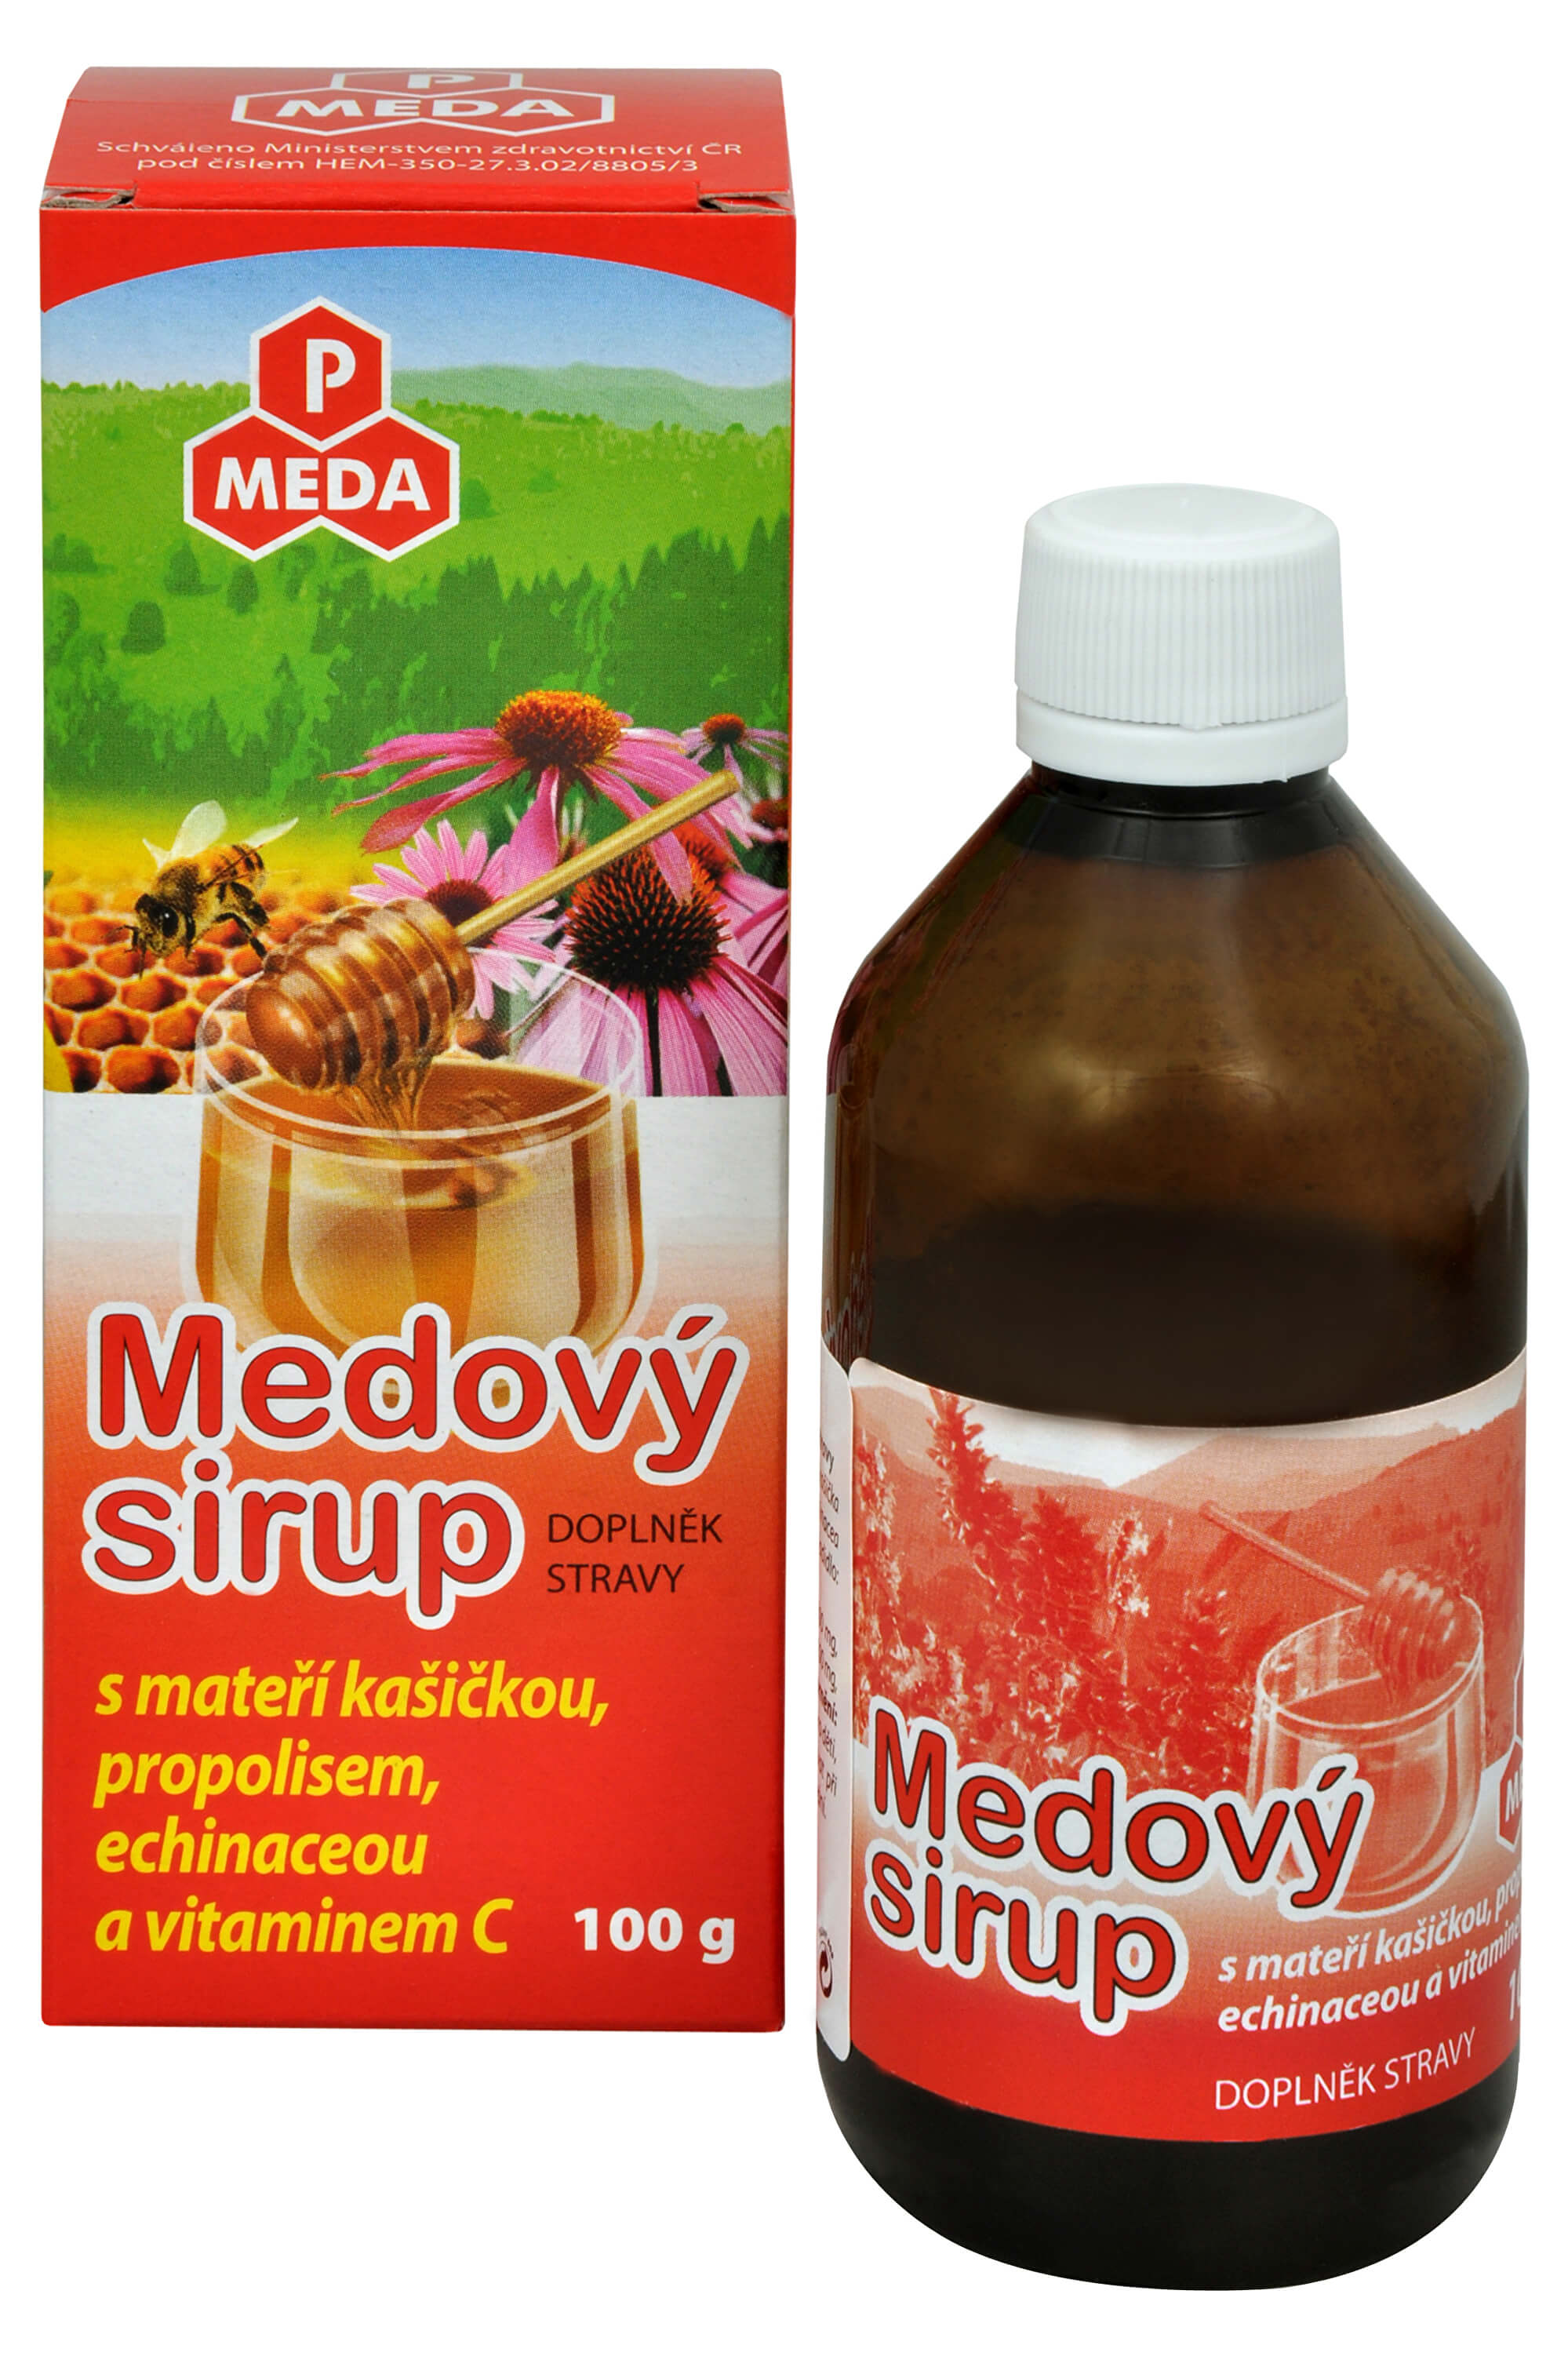 Purus Meda PM Medový sirup s mateří kašičkou, propolisem, echinaceou a vitamínem C 100 g